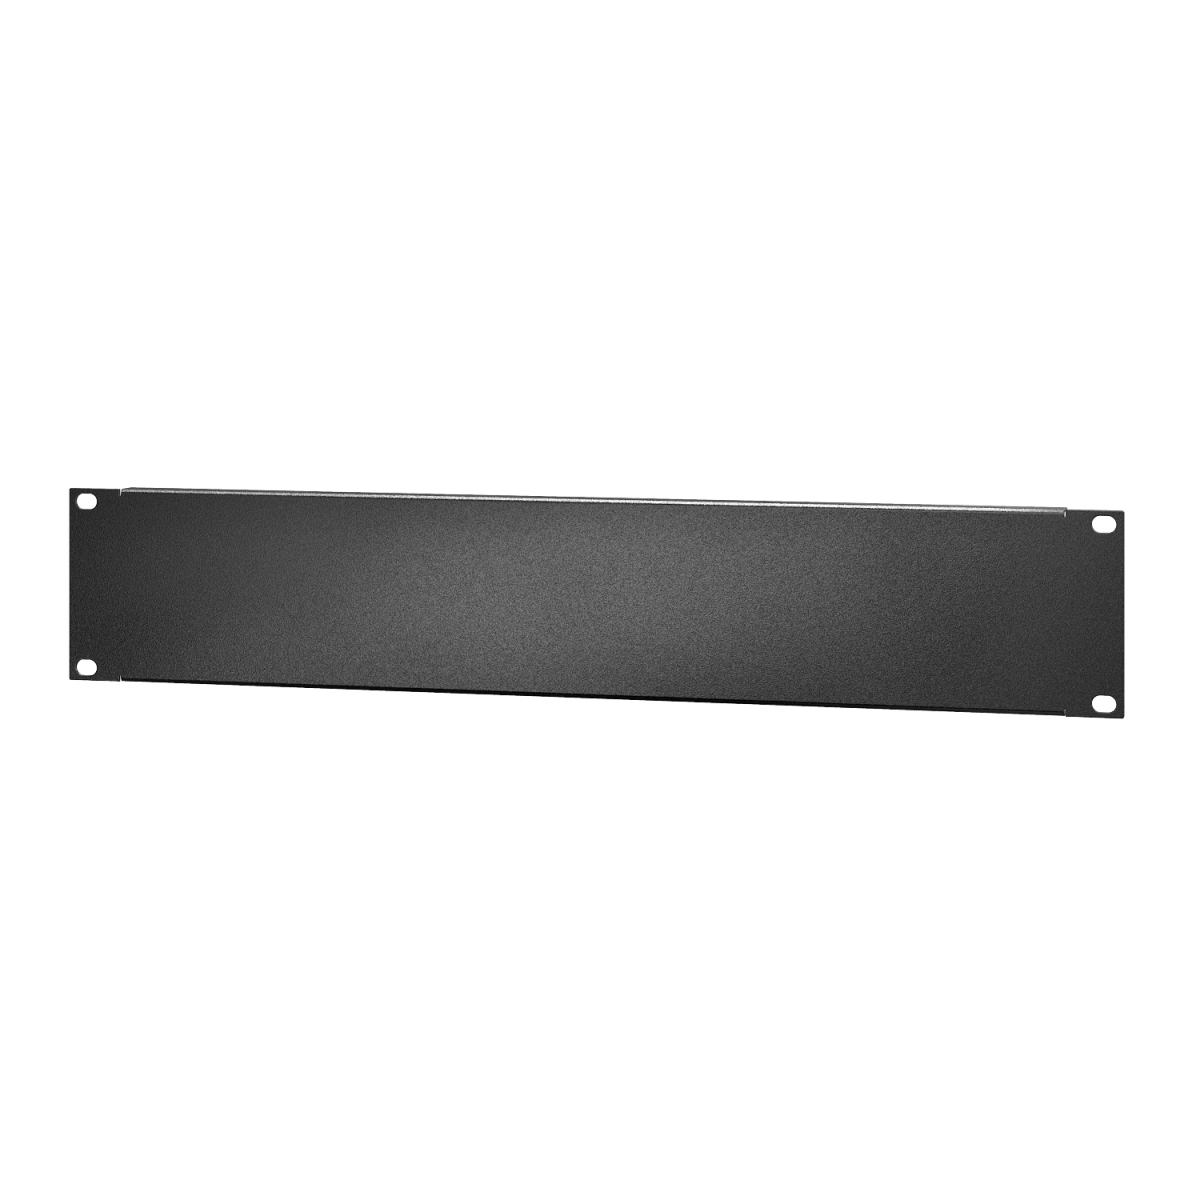 Easy Rack 2U standard metal blanking panel, 10 pk